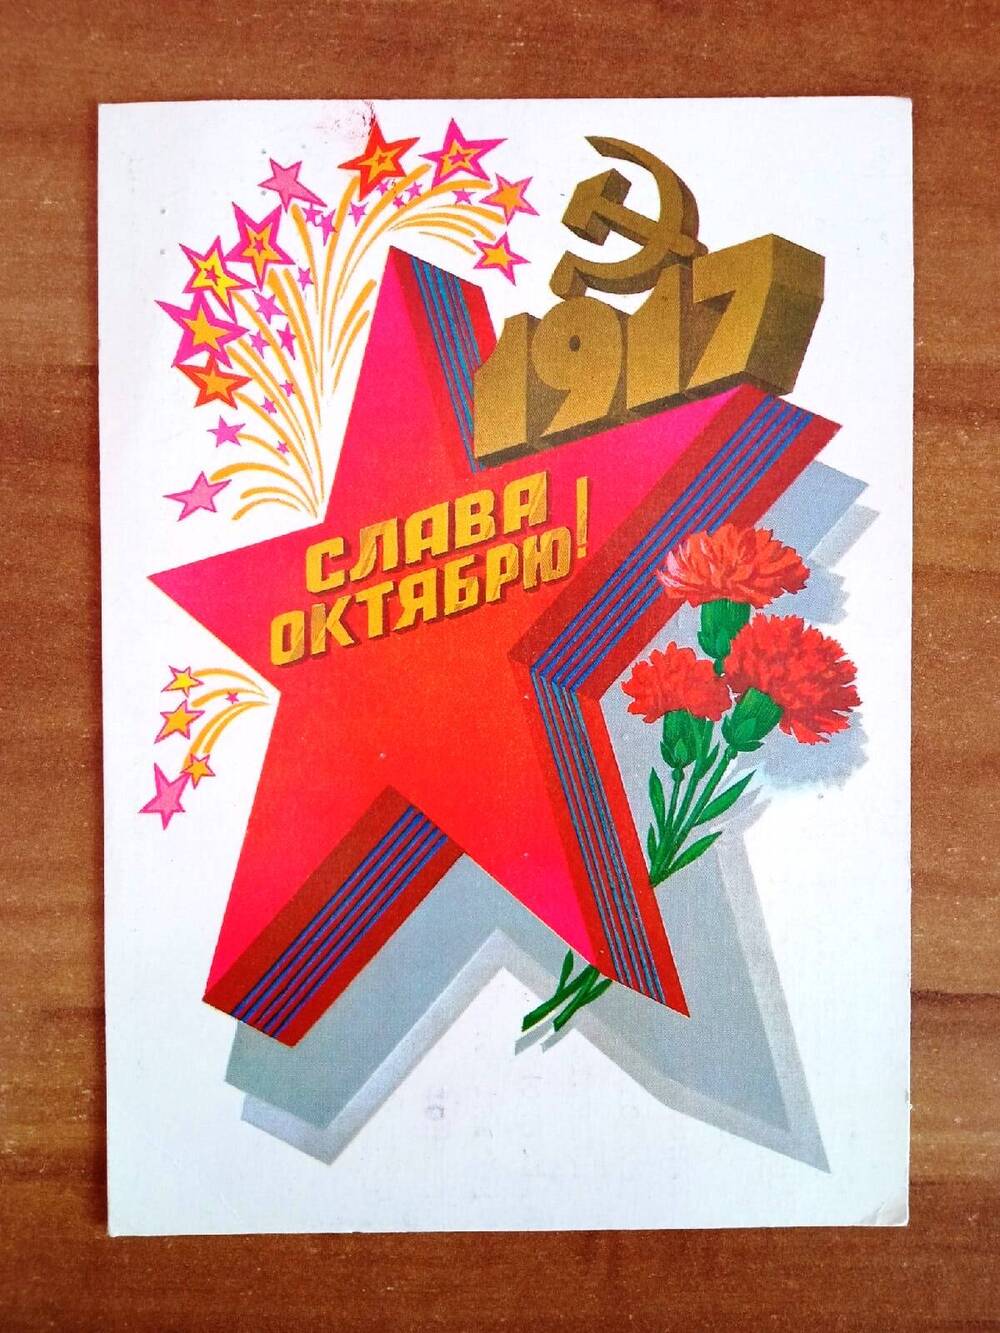 Открытка почтовая, поздравительная, цветная. В центре открытки изображена красная звезда с надписью: «Слава Октябрю»